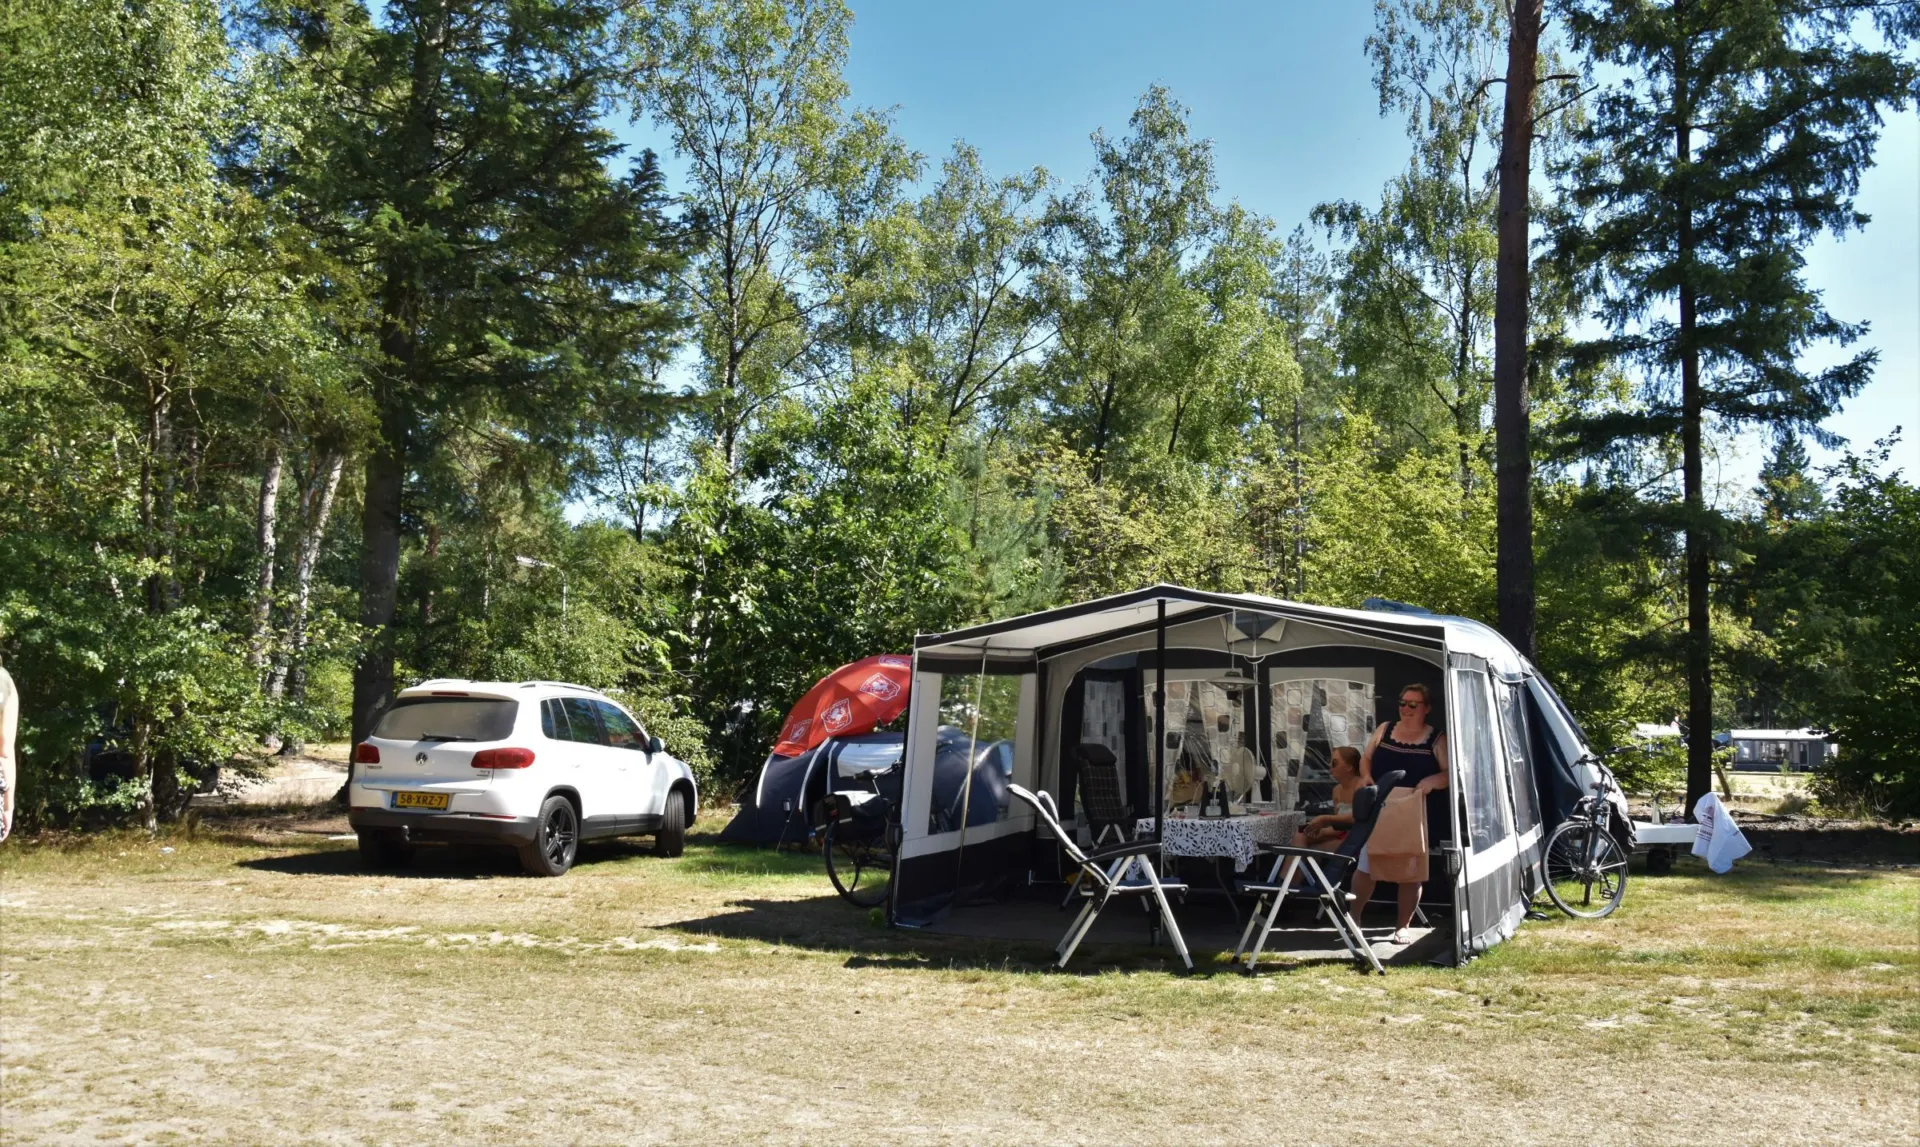 Camping met hond kampeerplaats Ommerhout 9